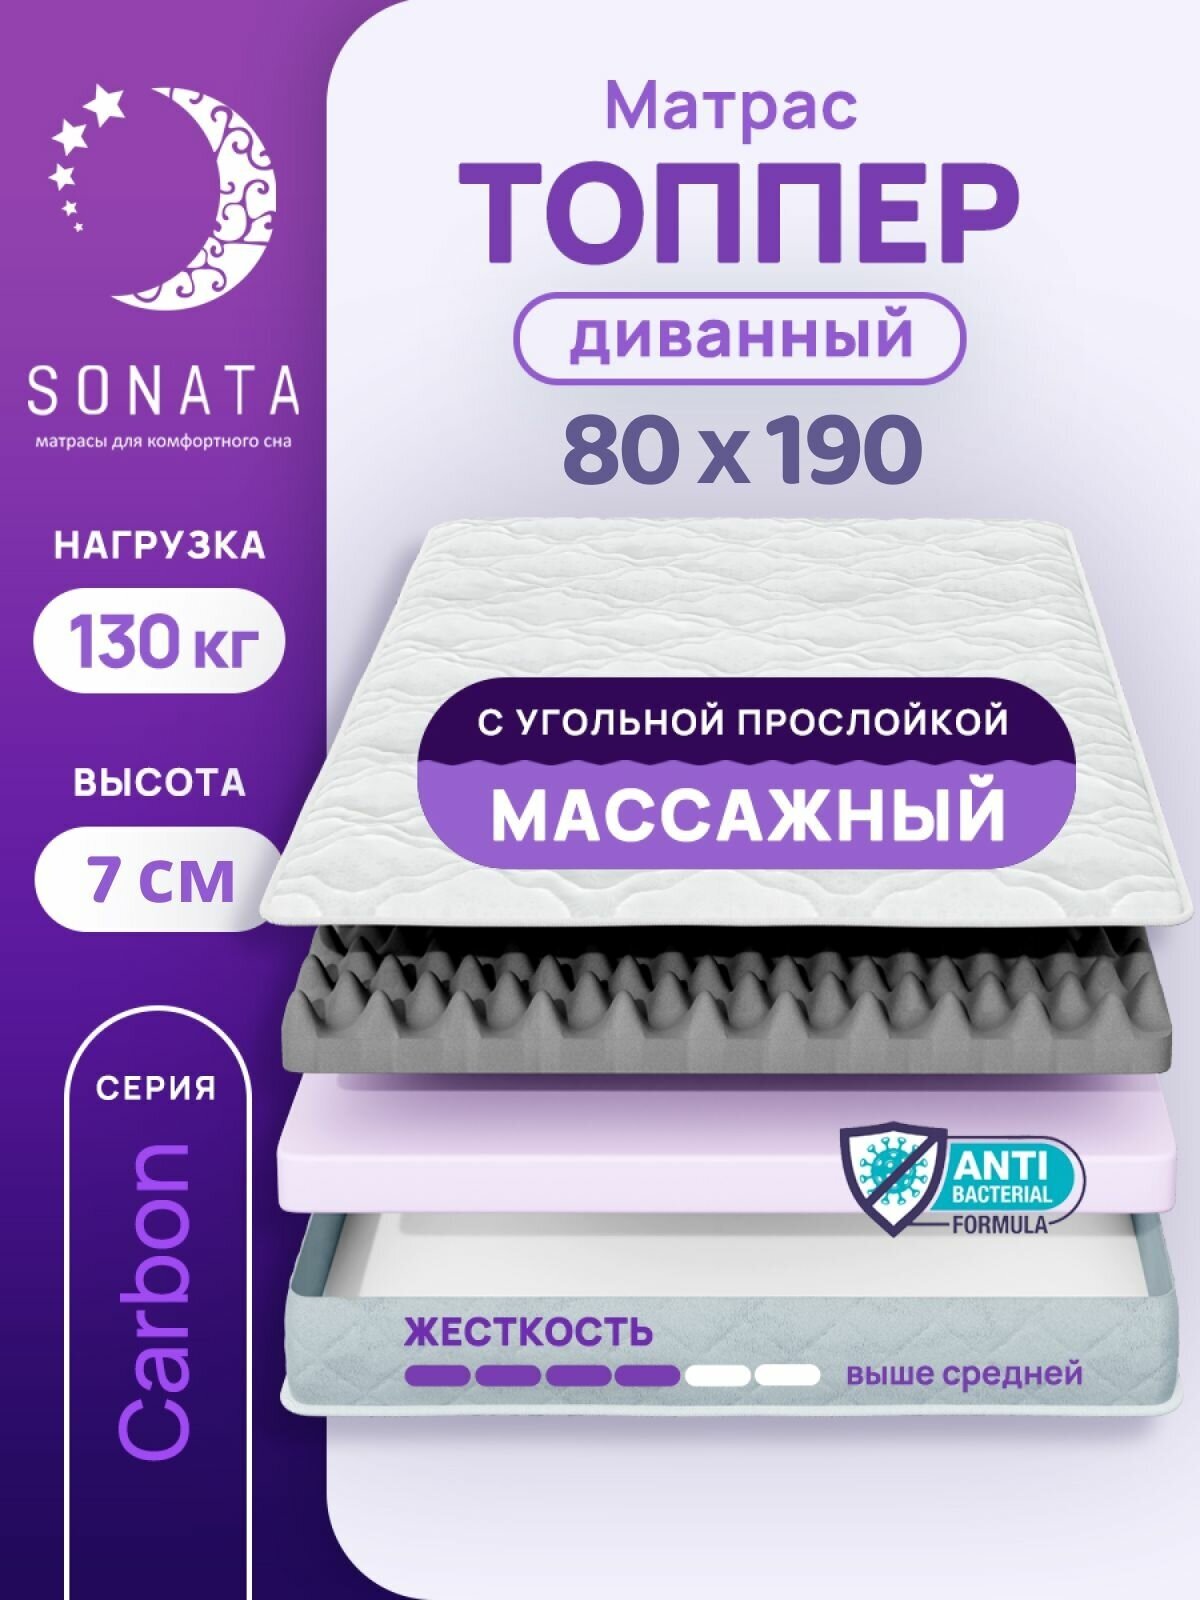 Топпер матрас 80х190 см SONATA, ортопедический, беспружинный, односпальный, тонкий матрац для дивана, кровати, высота 7 см с массажным эффектом